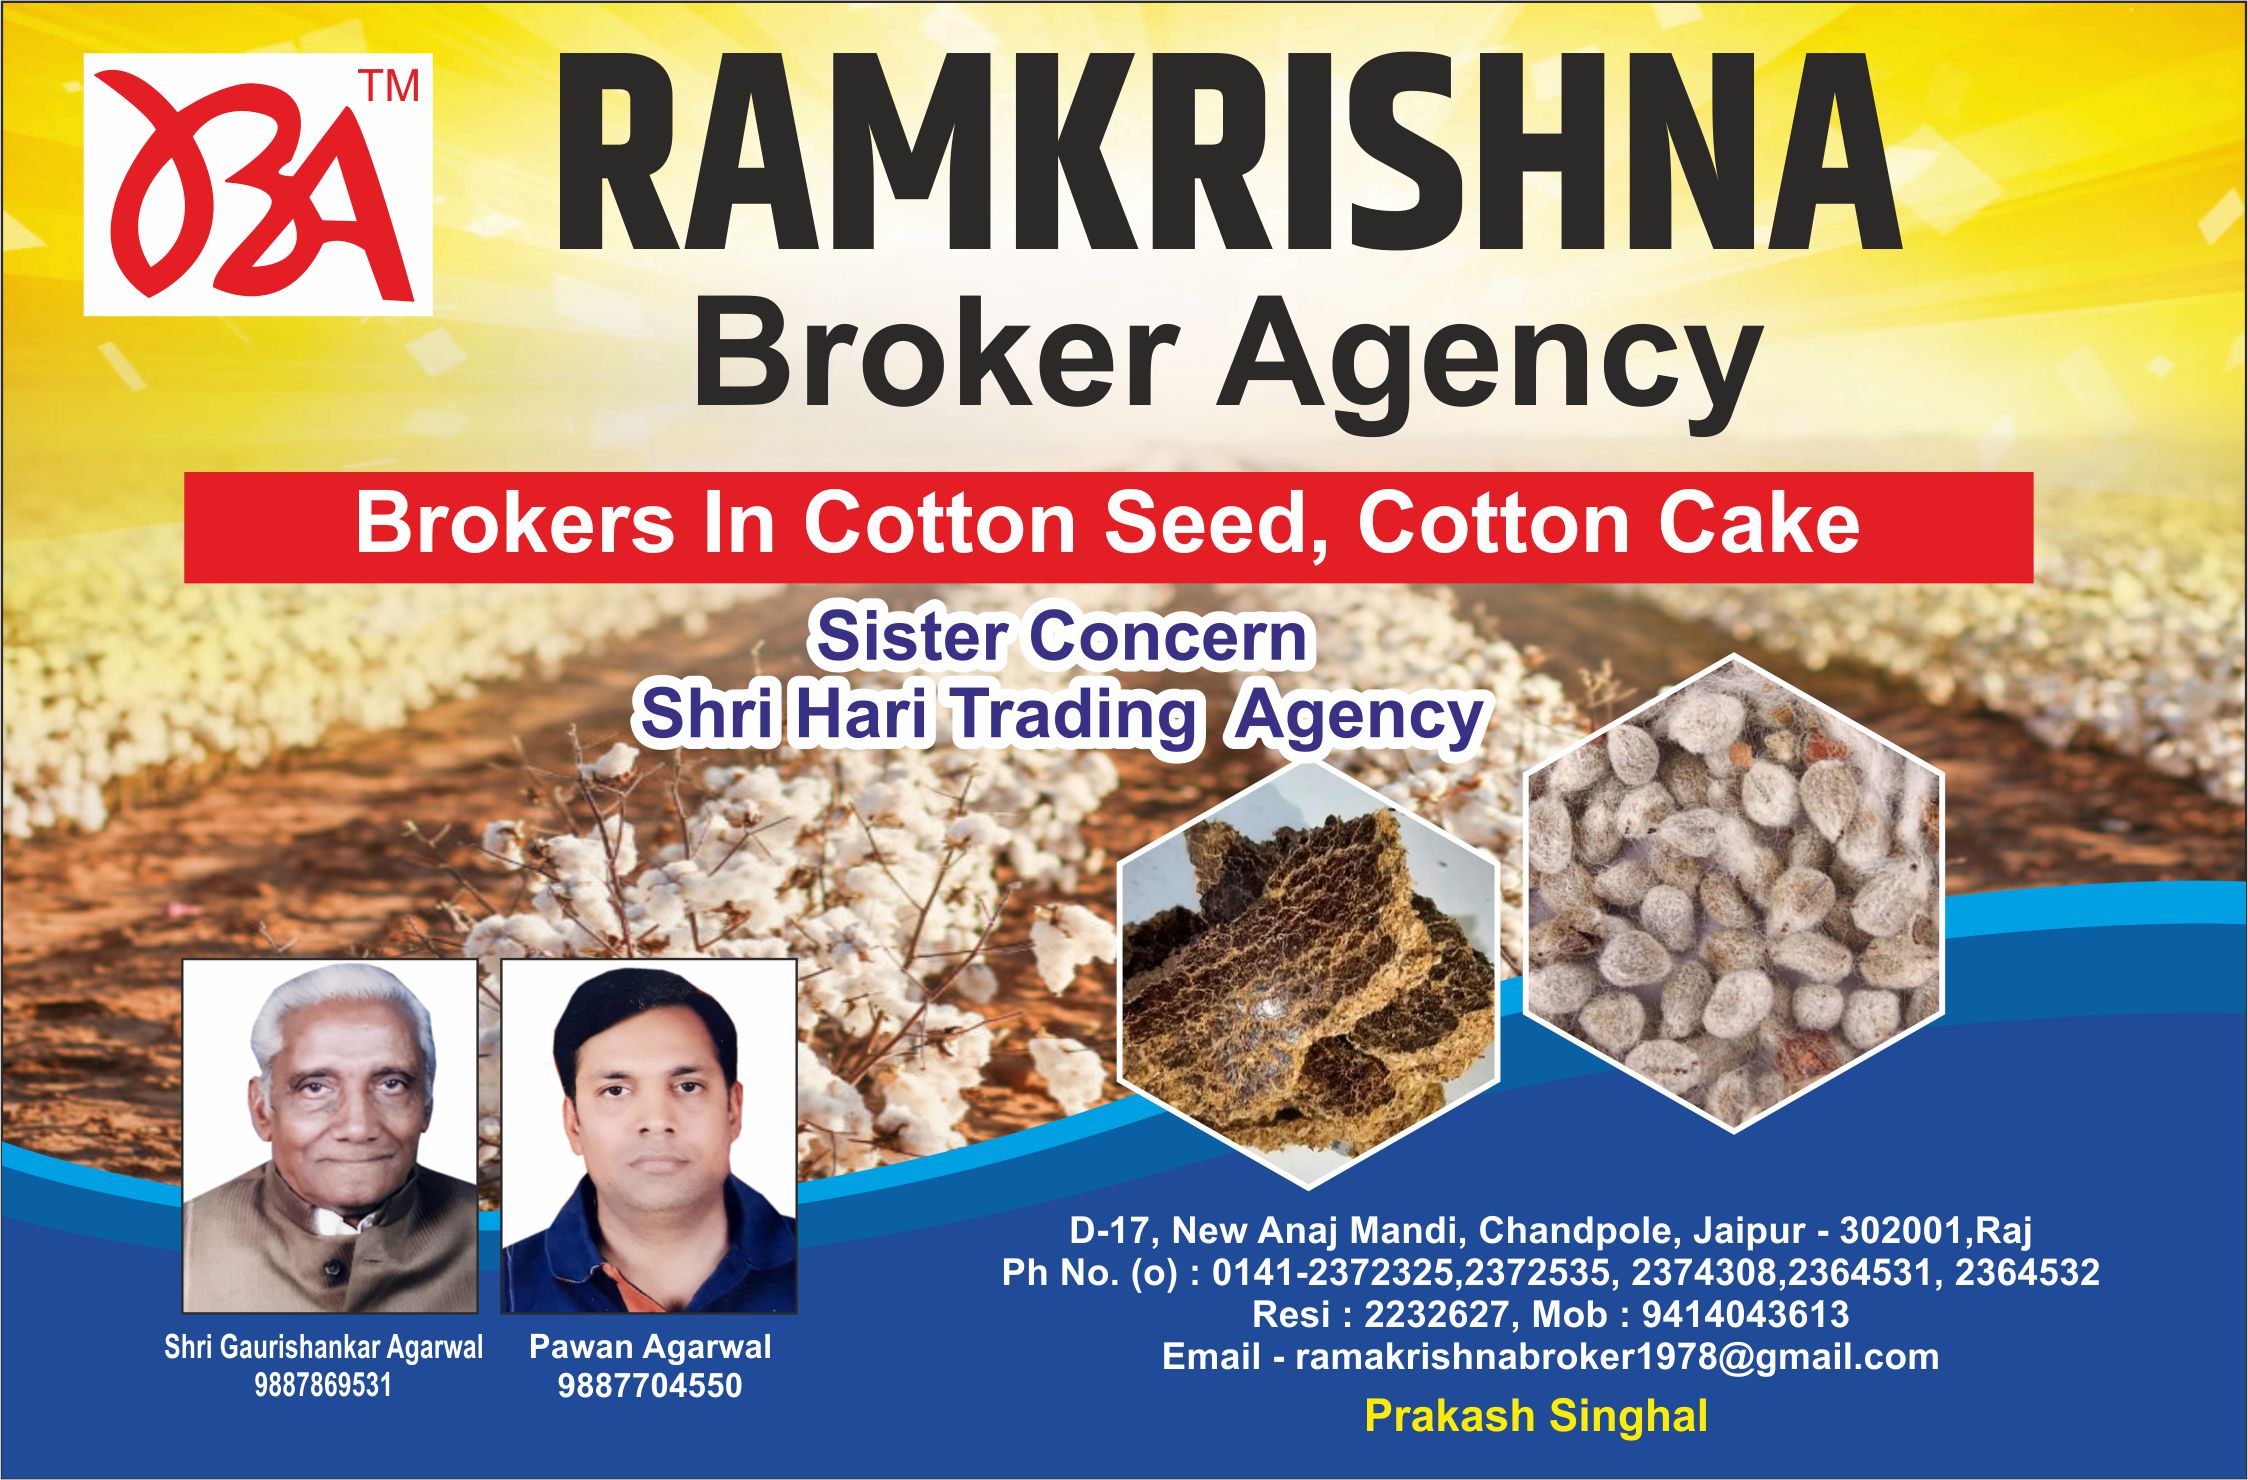 Ramkrishna Broker Agency